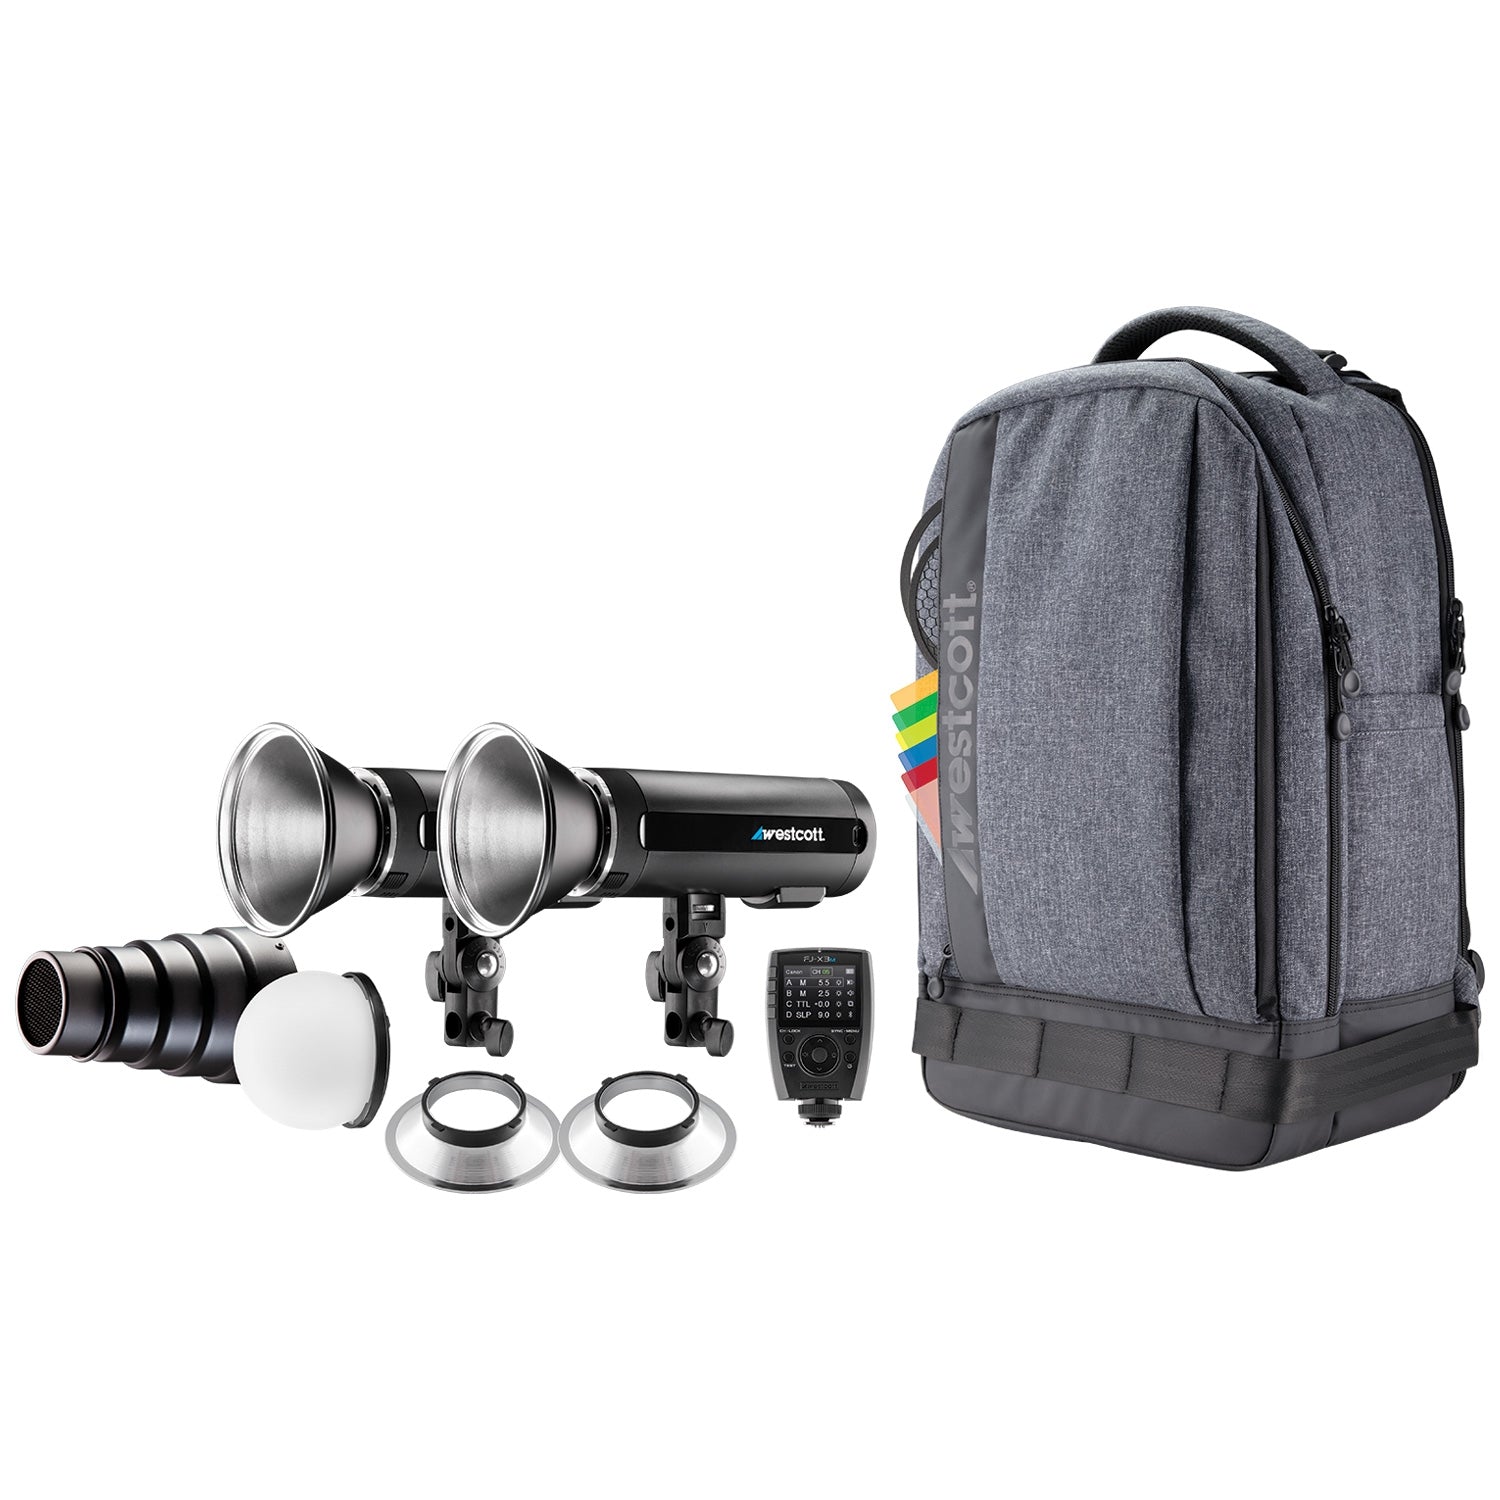 FJ200 Strobe 2-Light Backpack Kit with FJ-X3 M Universal Wireless Trig